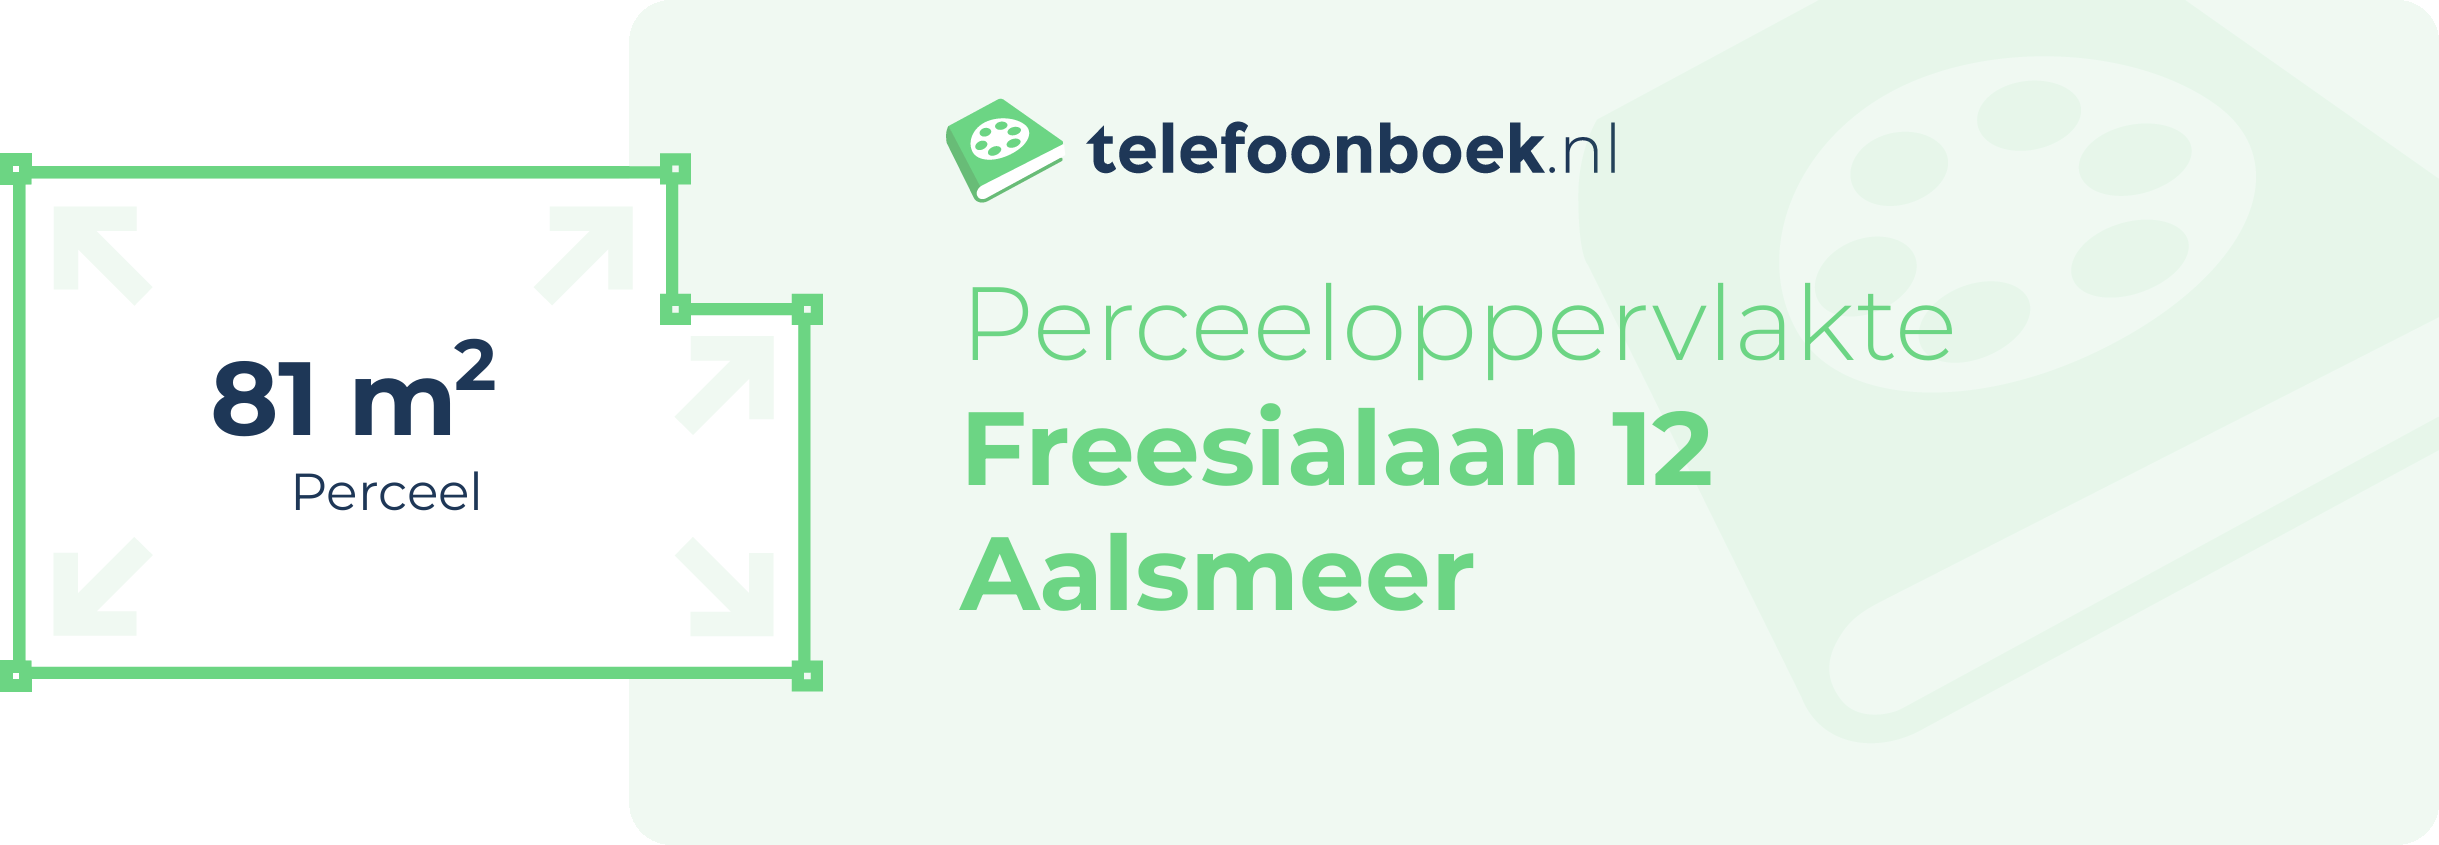 Perceeloppervlakte Freesialaan 12 Aalsmeer